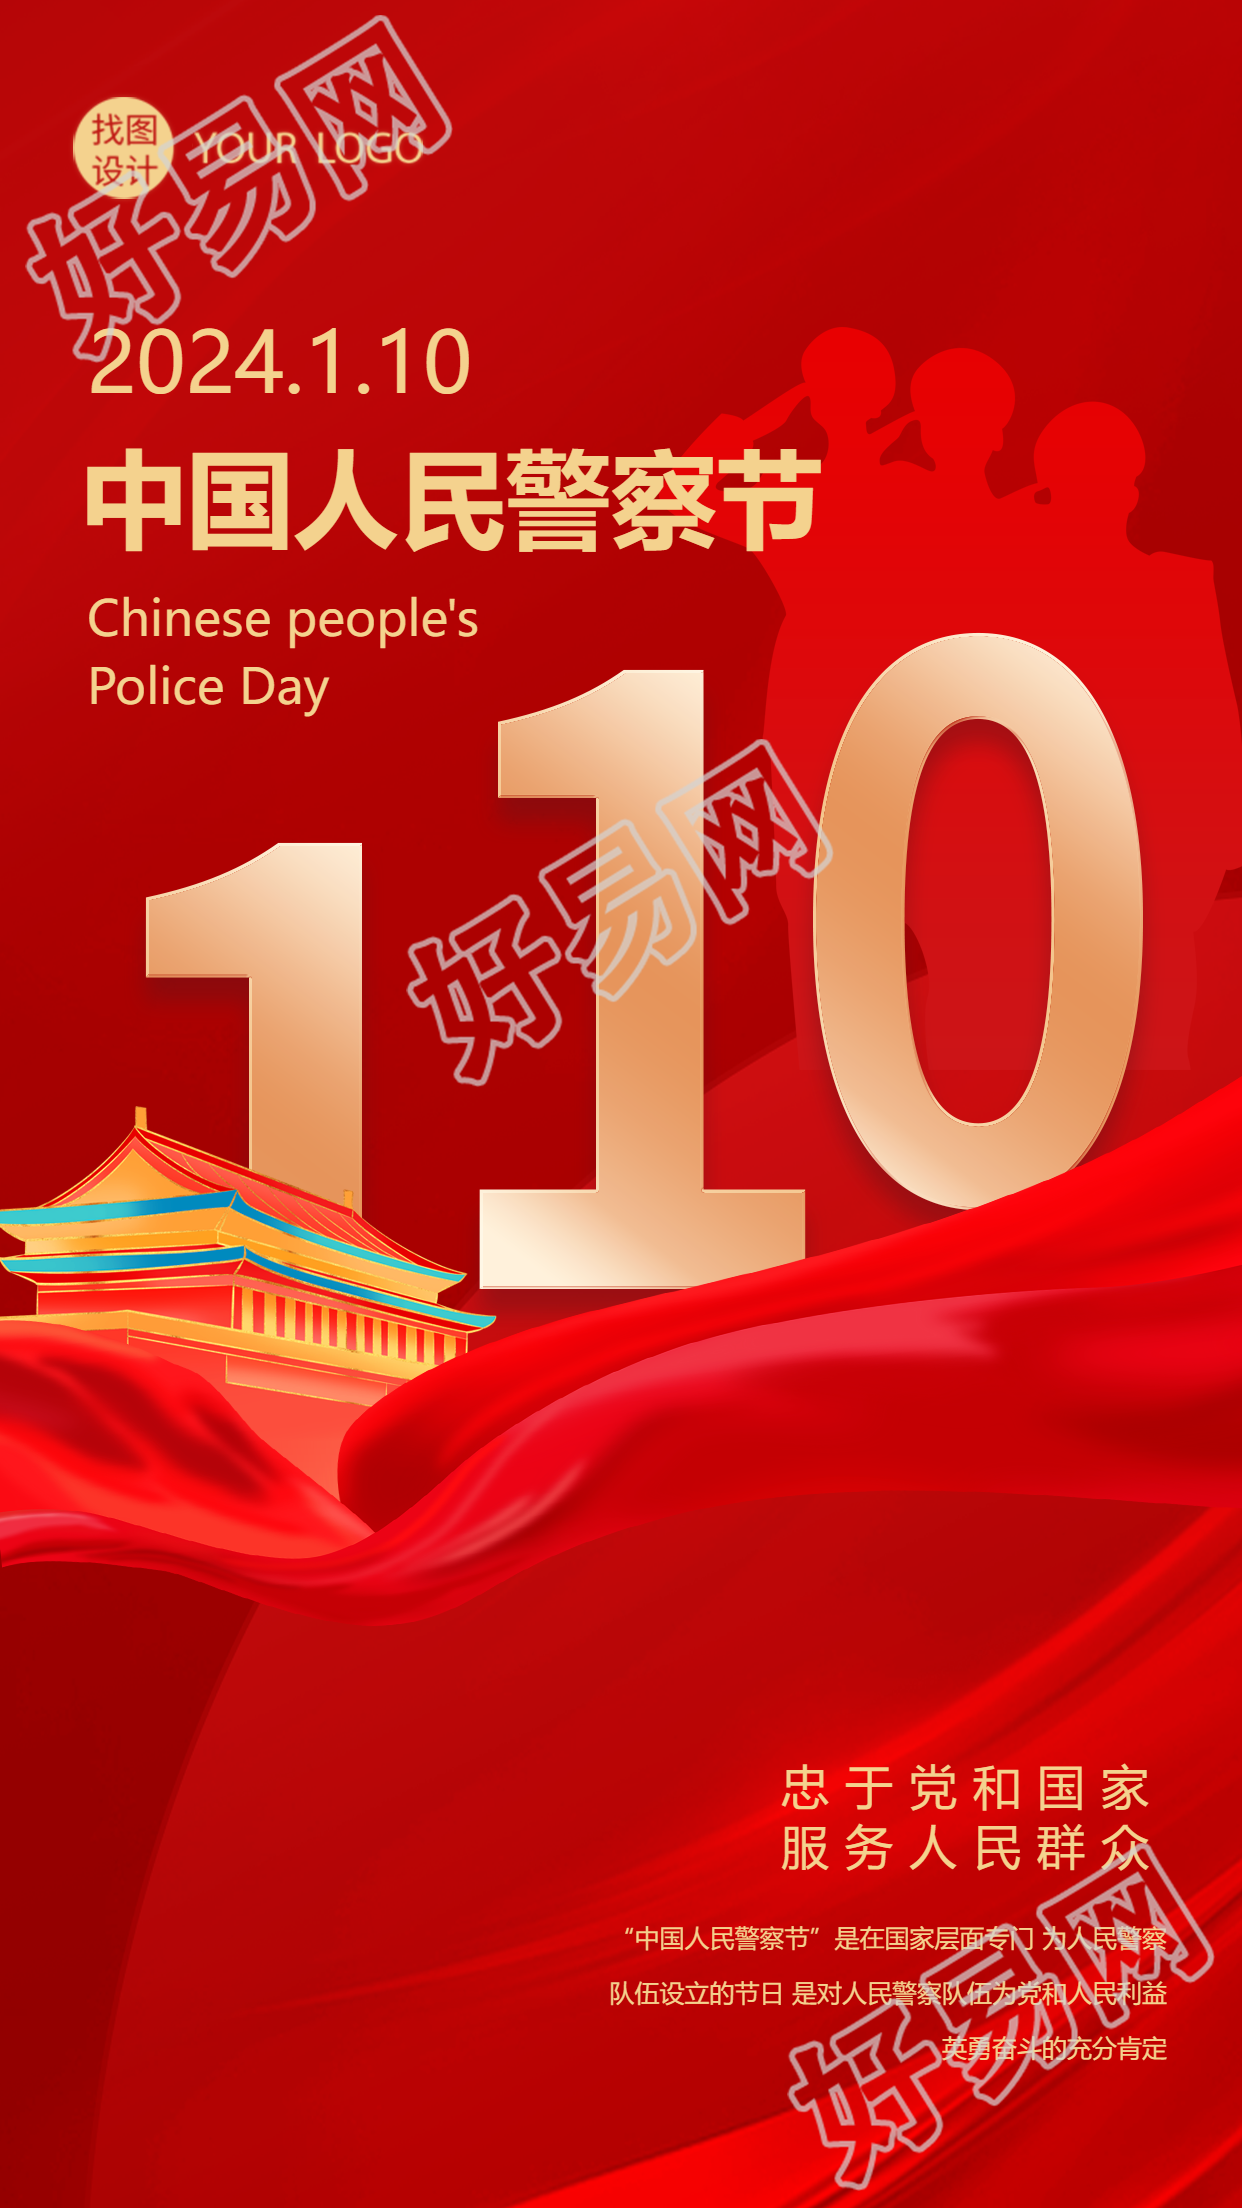 中国人民警察节创意天安门手机海报